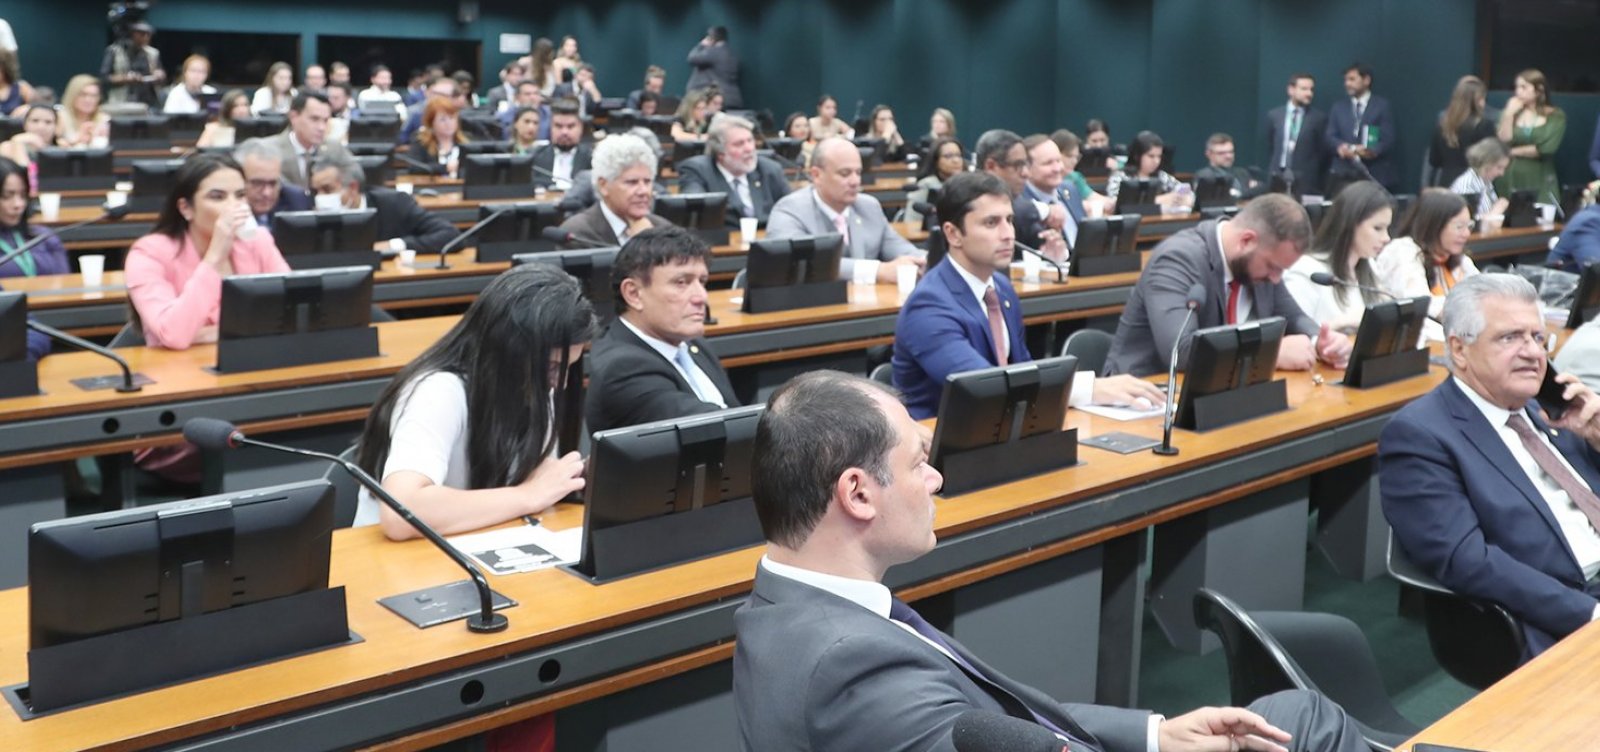 Câmara vai votar PEC que proíbe legalização e descriminalização de drogas ilícitas no Brasil nesta quarta-feira